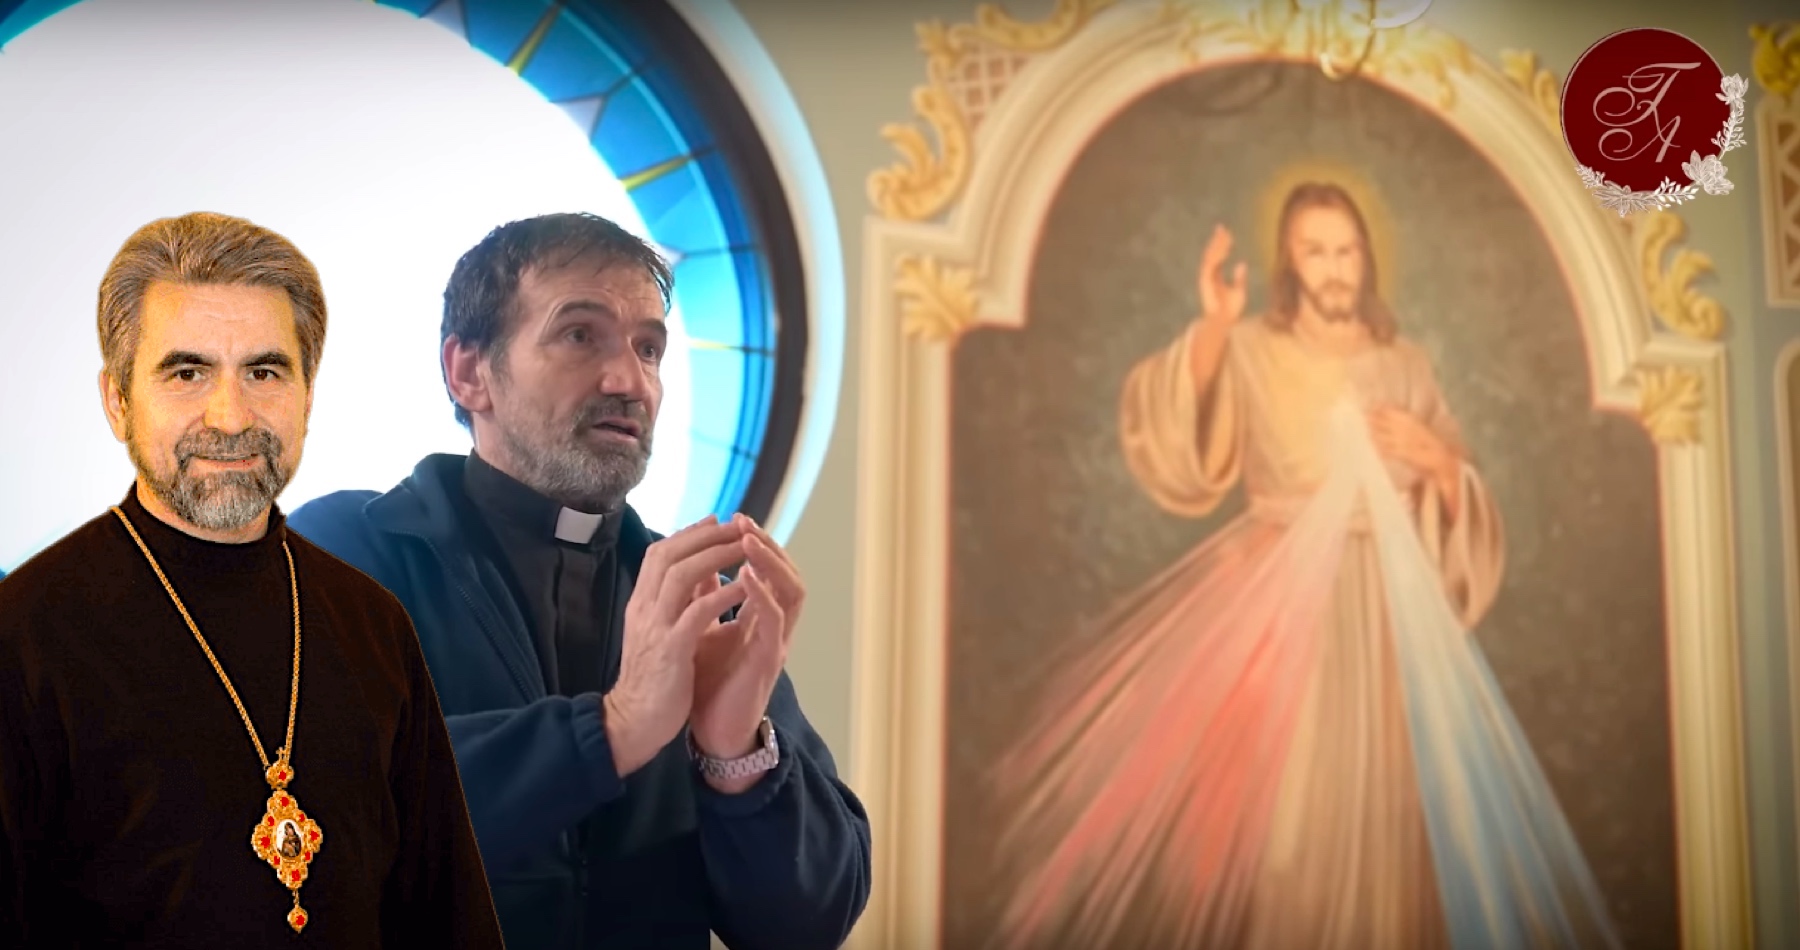 VIDEO: Gréckokatolícky biskup Milan Chautur o prezidentských voľbách, médiách aj o stádovitosti ľud a odkaz kňaza Marián Kuffa, koho nevoliť